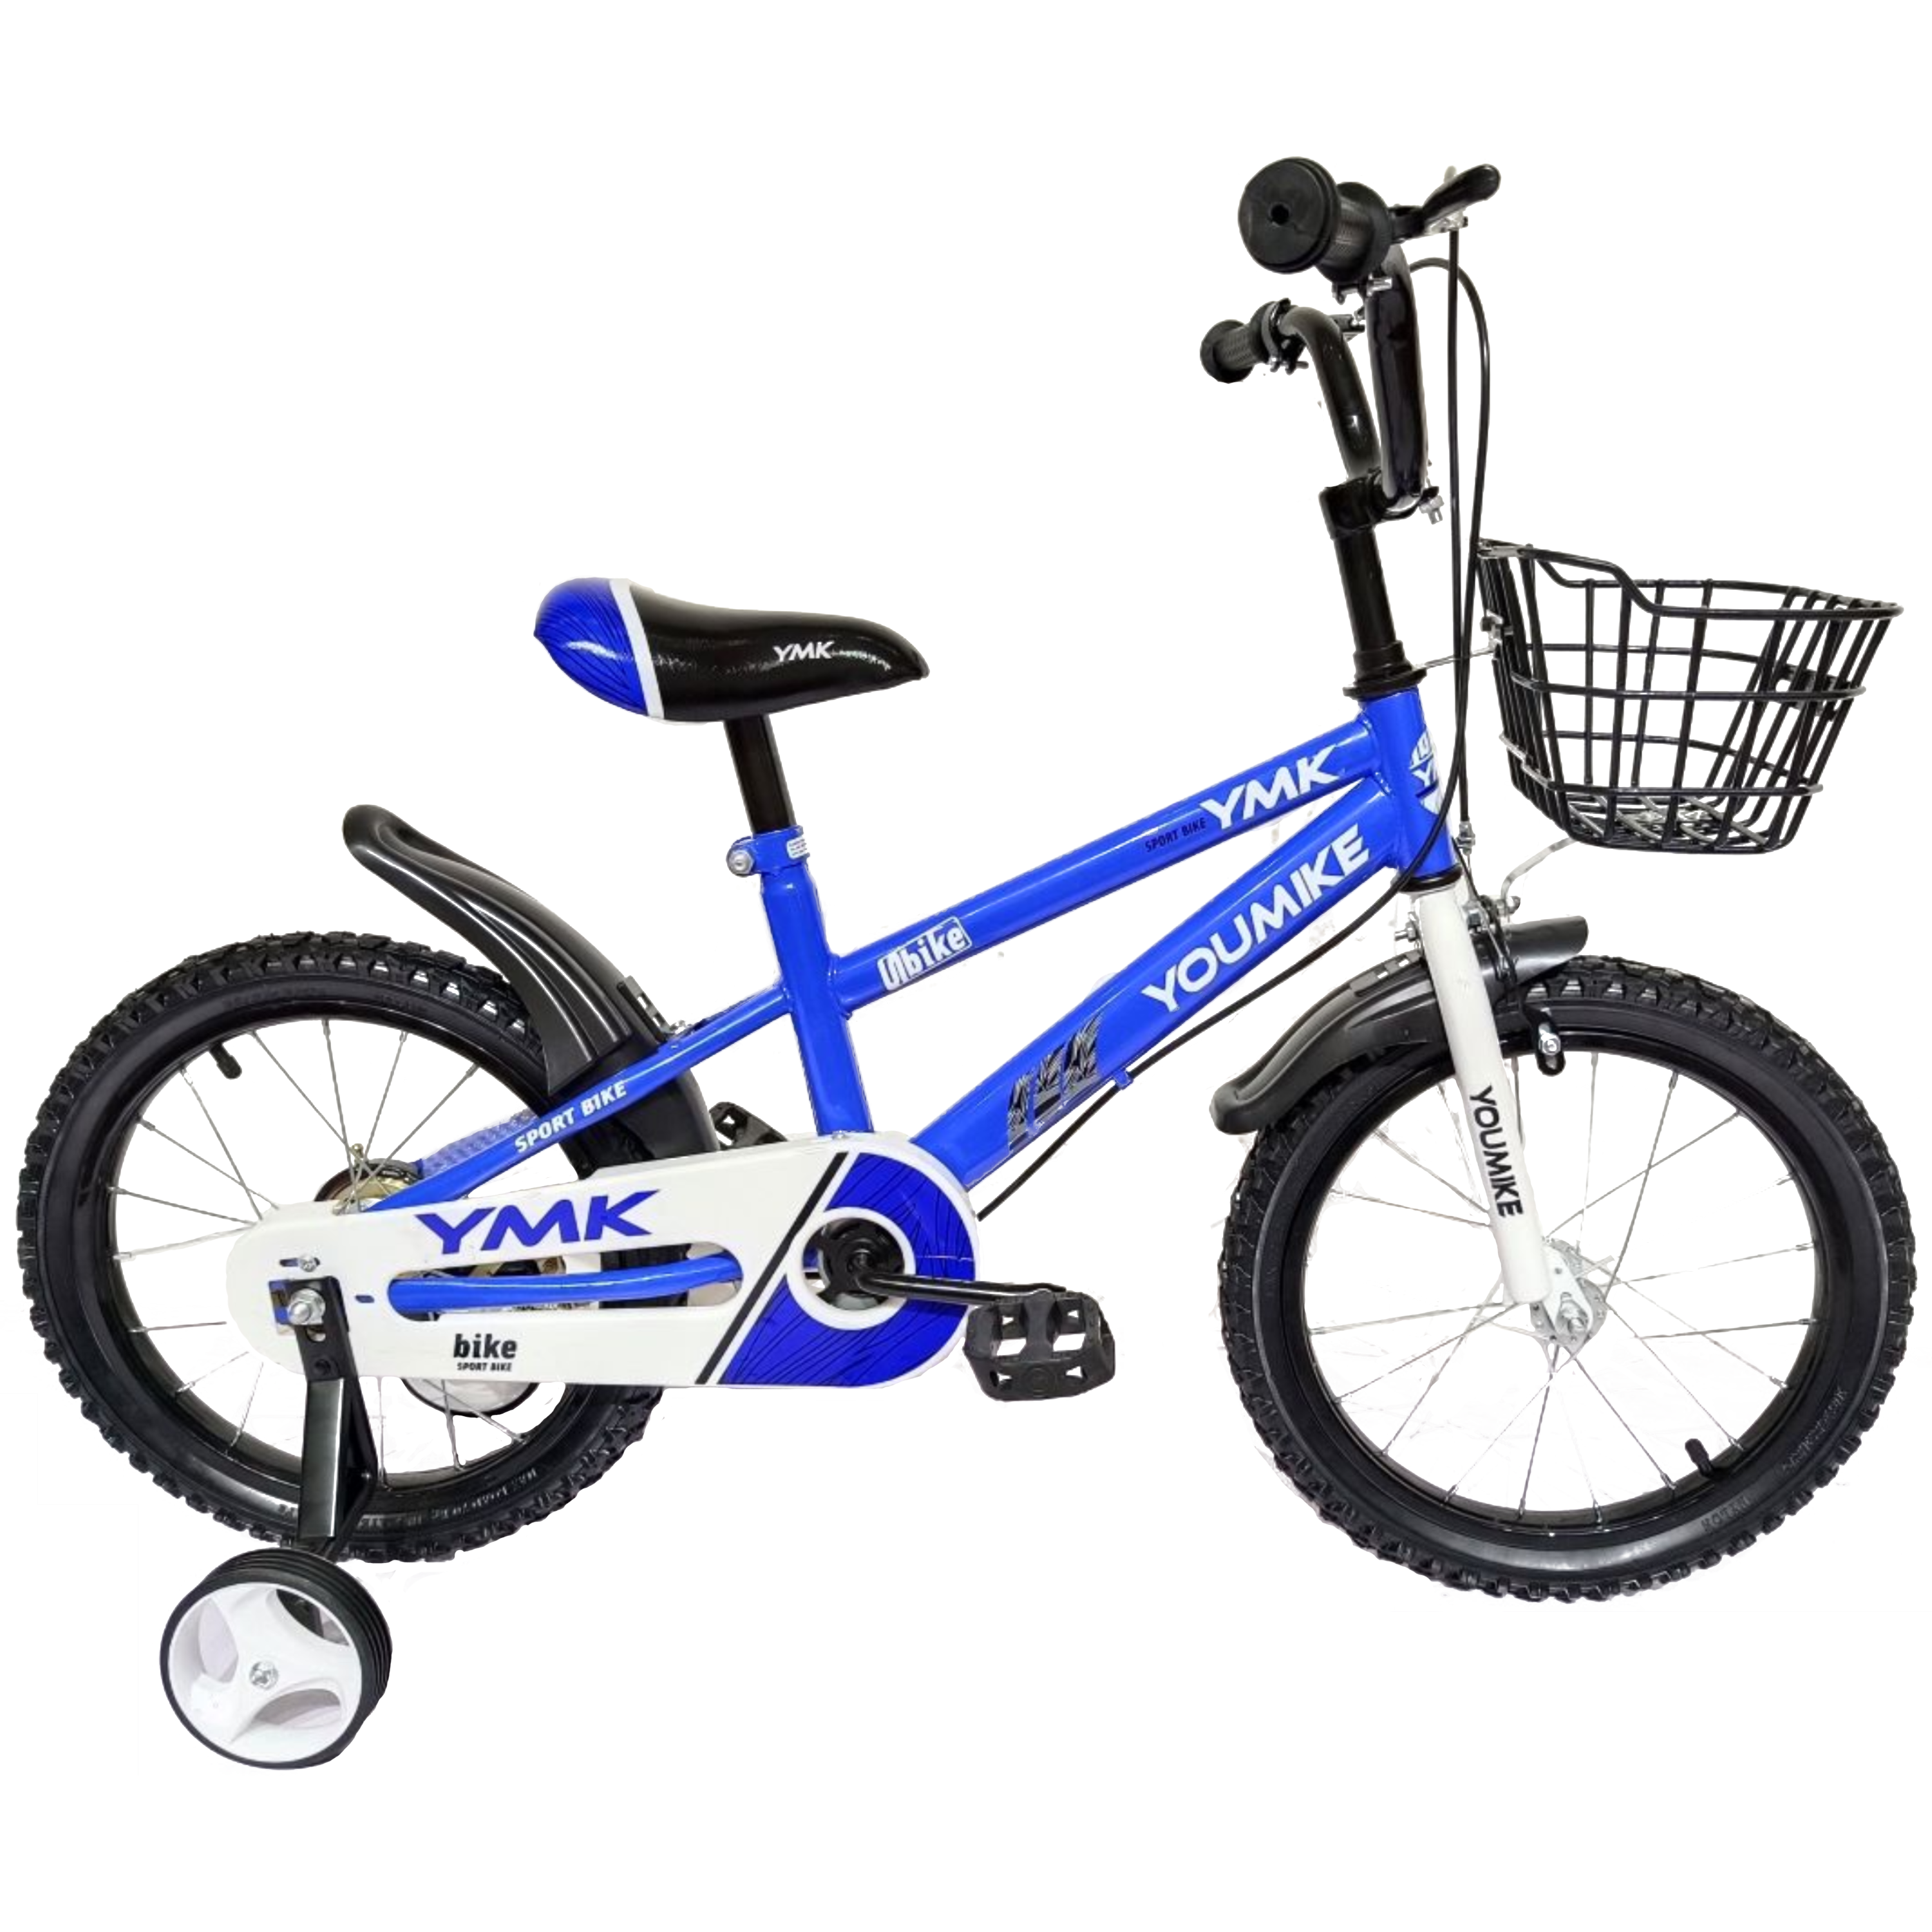 אופניים קלים לילדים 12 אינץ Rosso Italy RSM-1032 - צבע כחול שנה אחריות ע"י היבואן הרשמי